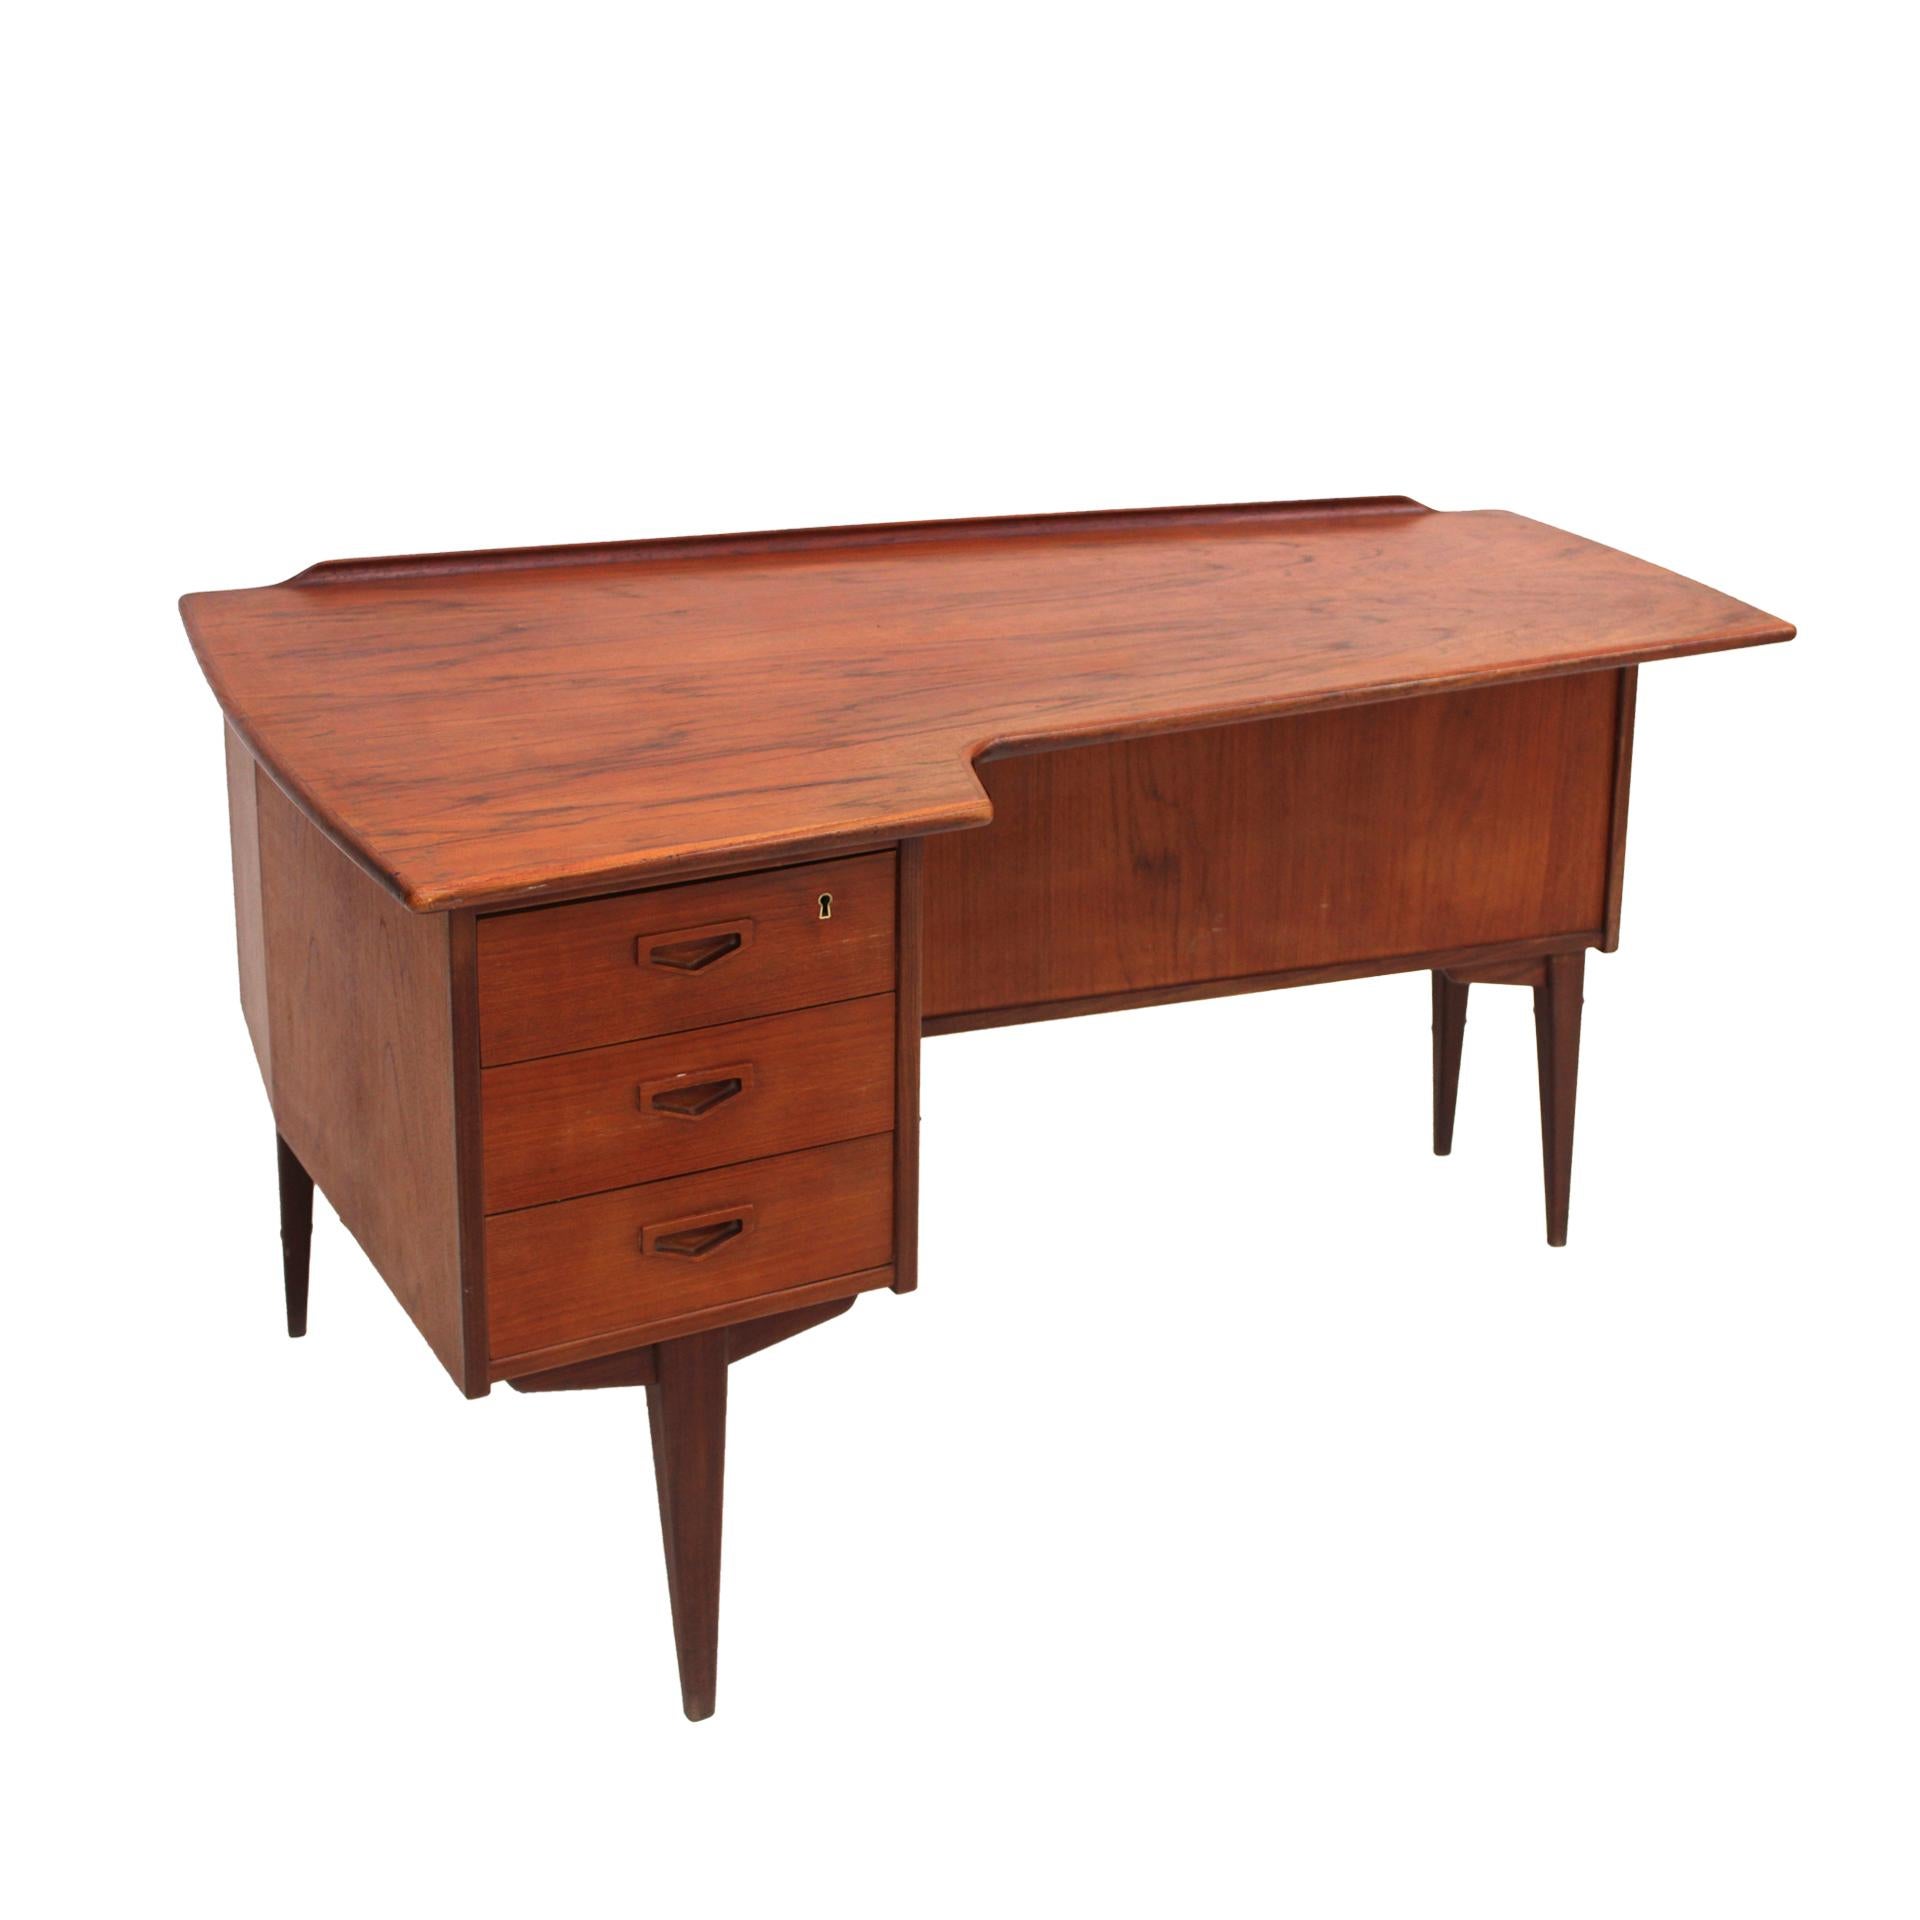 Danish Midcentury Solid Wood Desk Designed by Arne Vodder Boomerang, 1960s